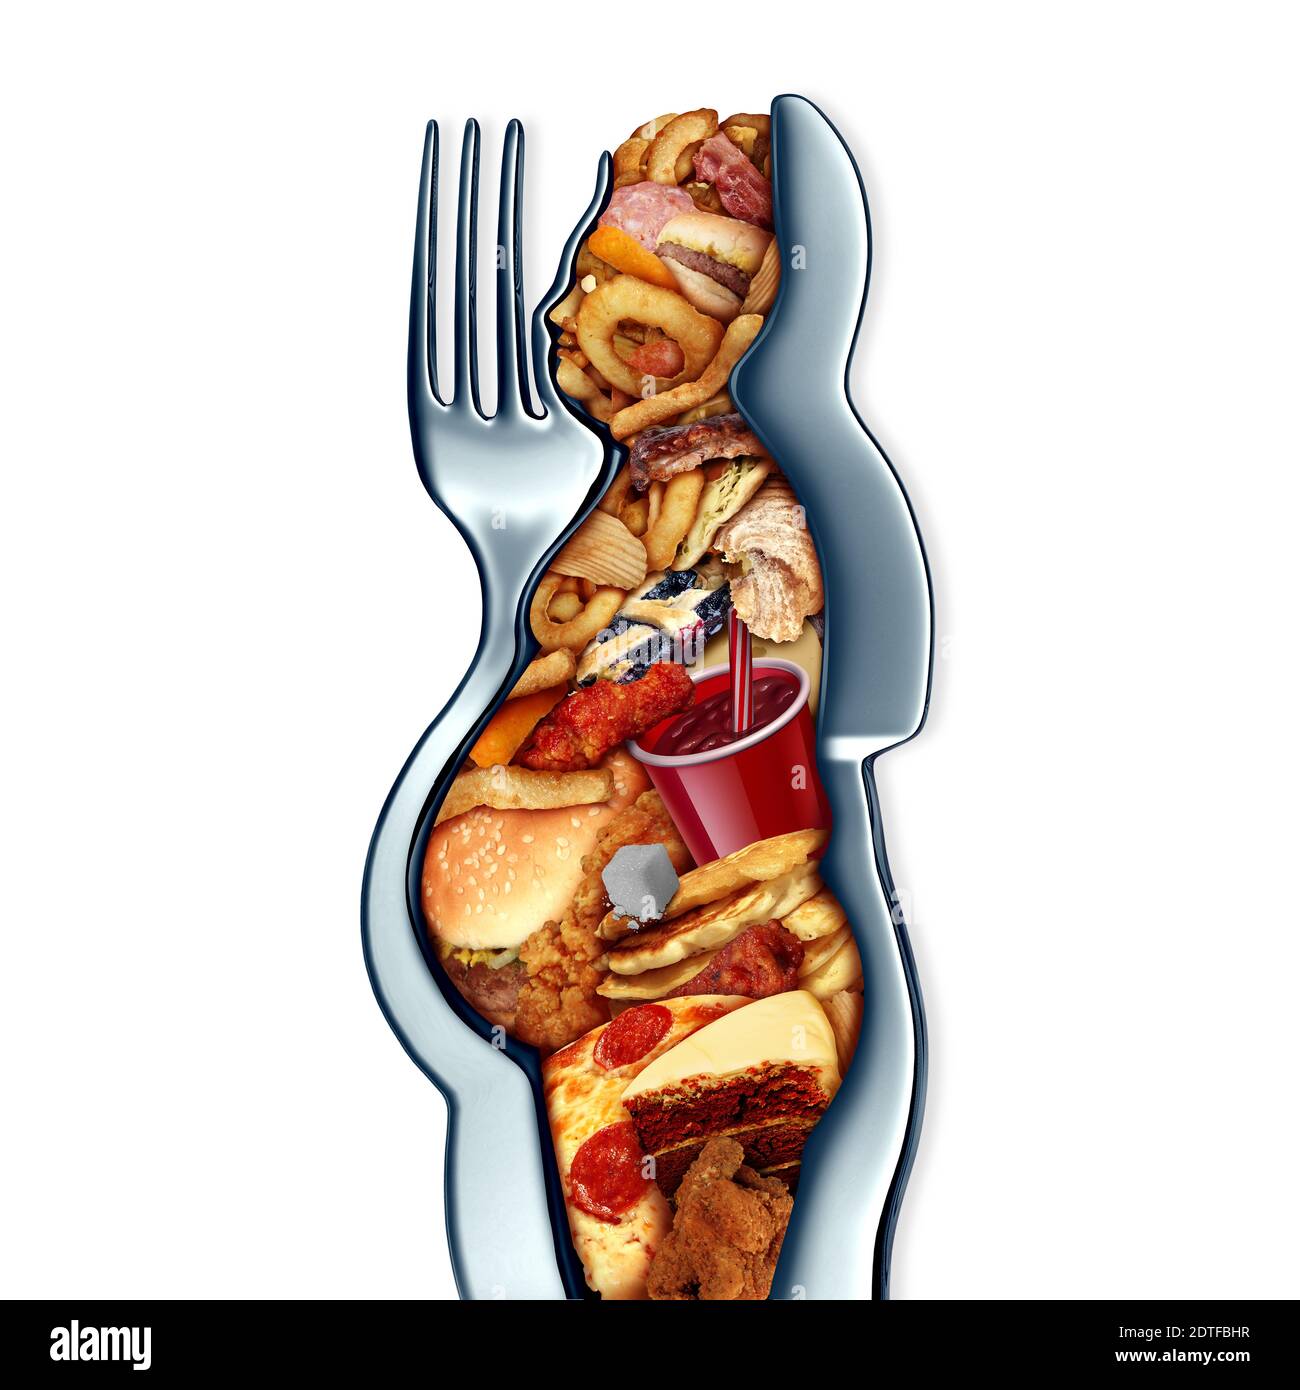 Übergewichtige übermäßiges Essen und Essen zu viel Fast Food und Gewichtszunahme oder Adipositas Konzept als Gabel und Messer als übergewichtige Person mit Lebensmitteln geformt. Stockfoto